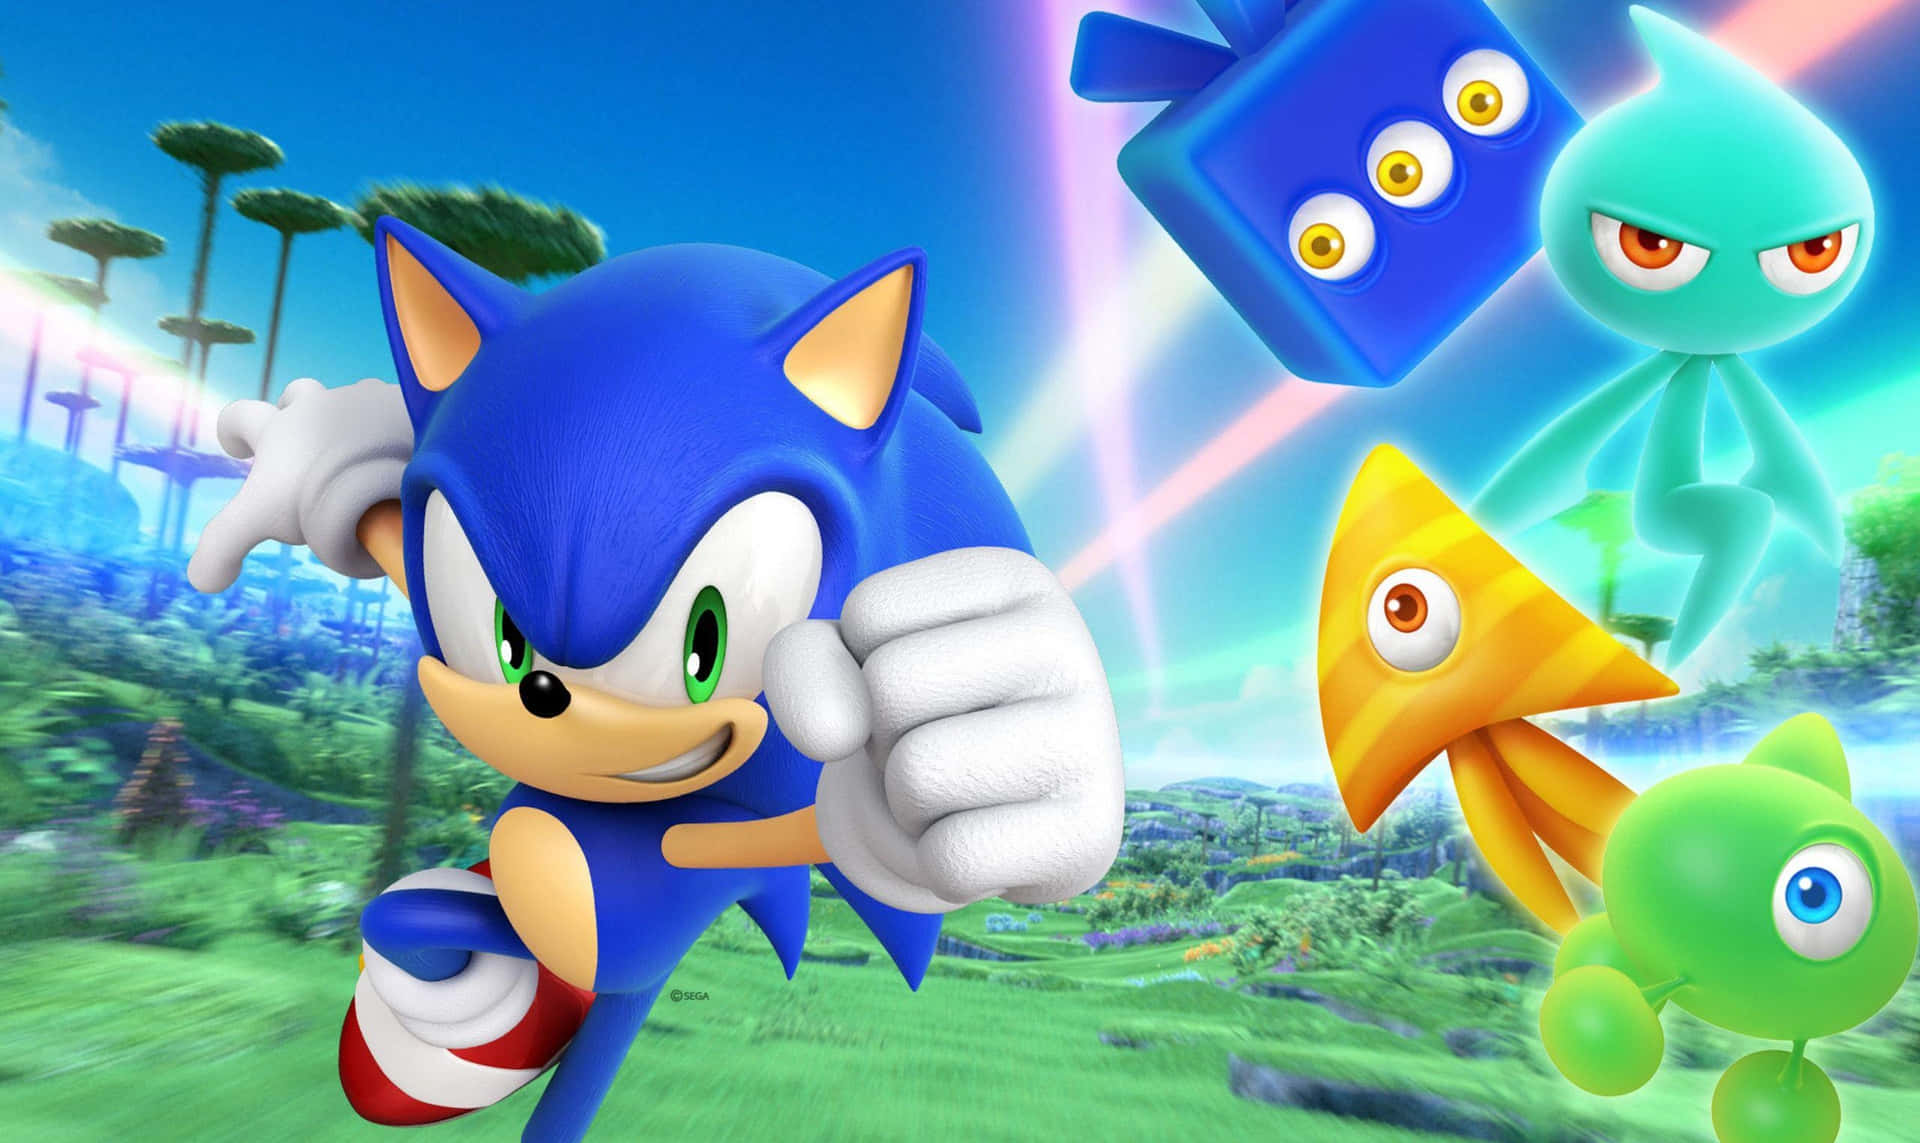 Sonic The Hedgehog - Sonic The Hedgehog - Sonic The Hedgehog - Sonic The Hedgehog - Sonic Wallpaper